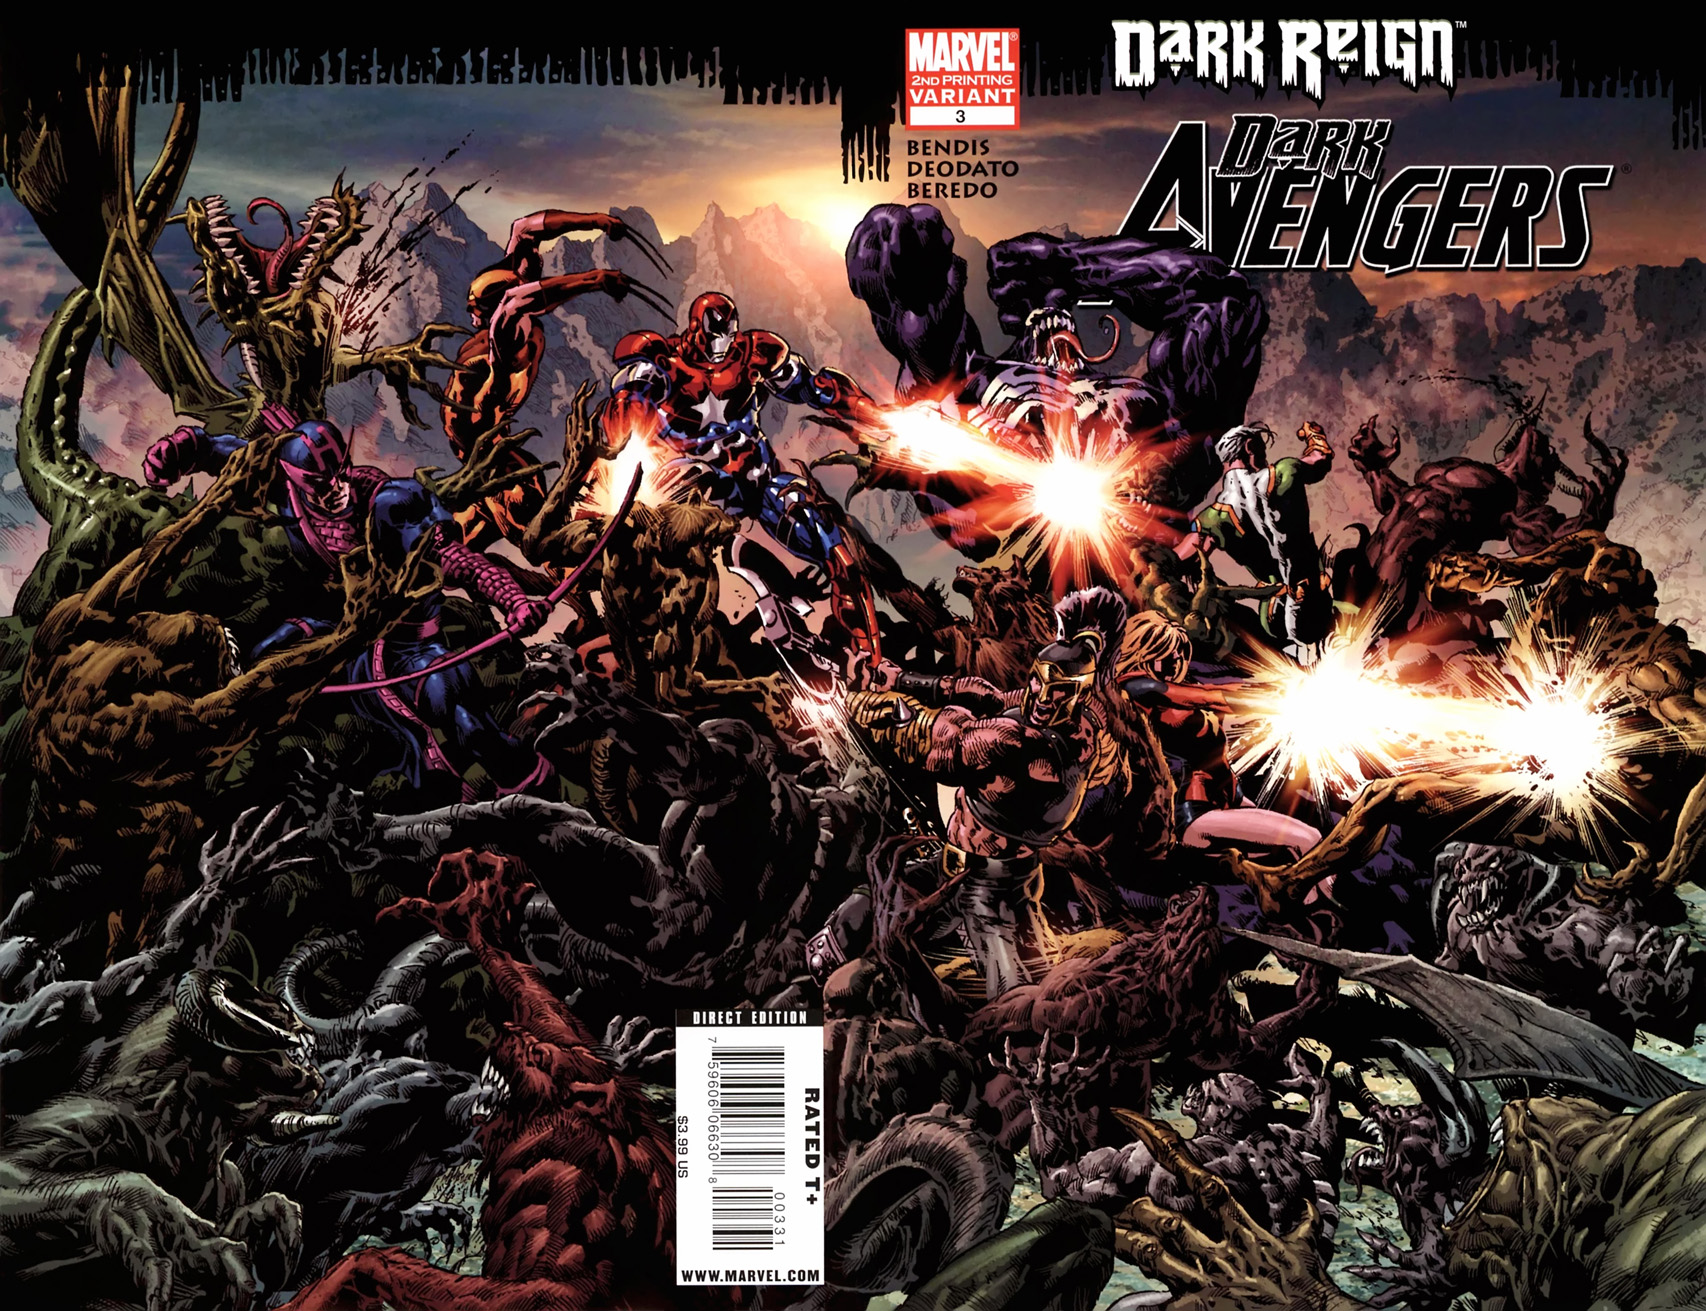 Dark Avengers #20